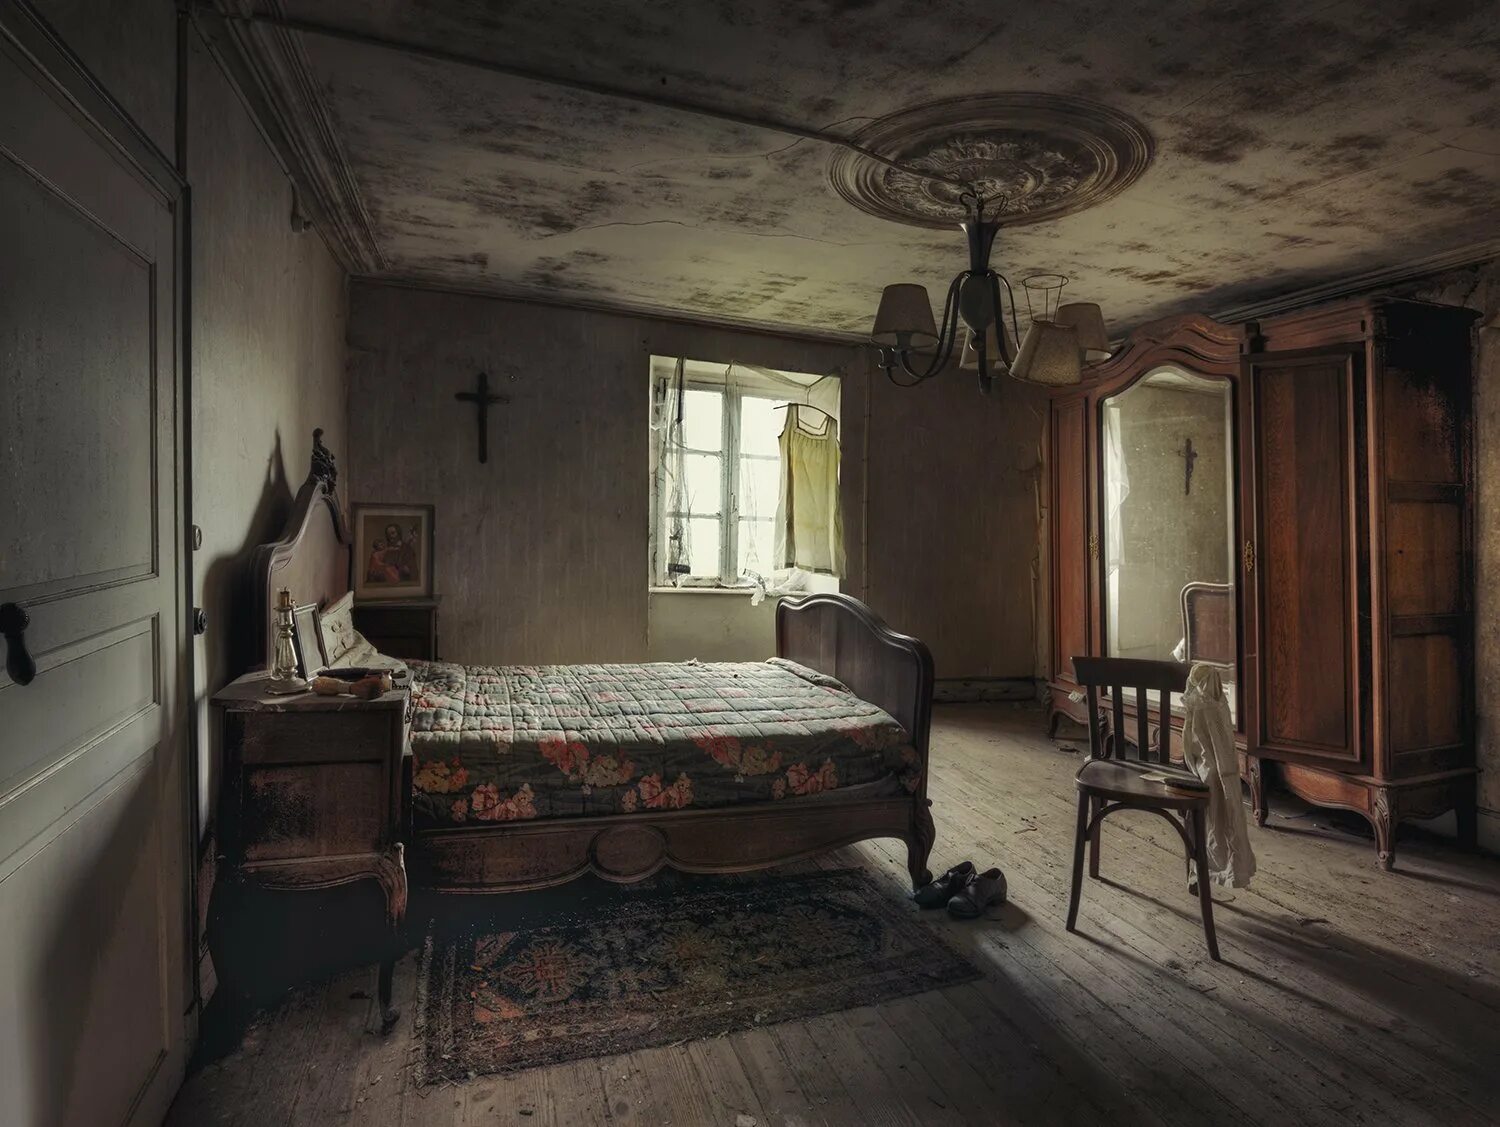 Old bedroom. Заброшенный дом внутри. Старинная комната. Старая комната. Старинный интерьер комнаты.